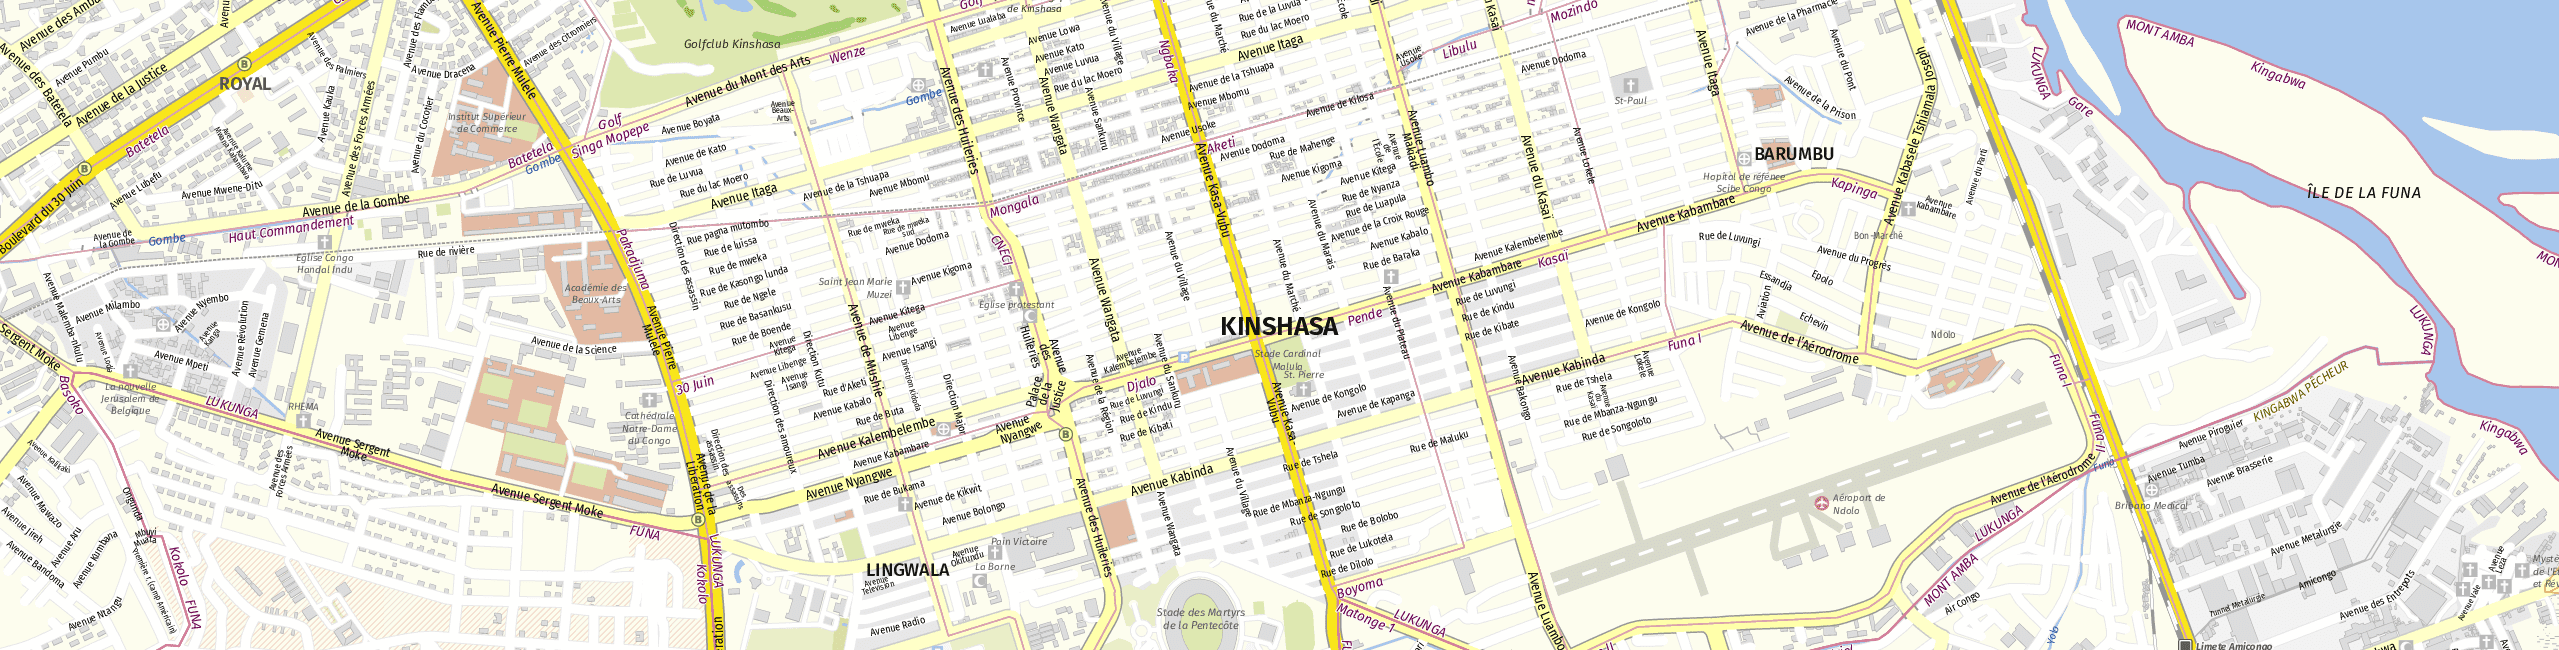 Stadtplan Kinshasa zum Downloaden.